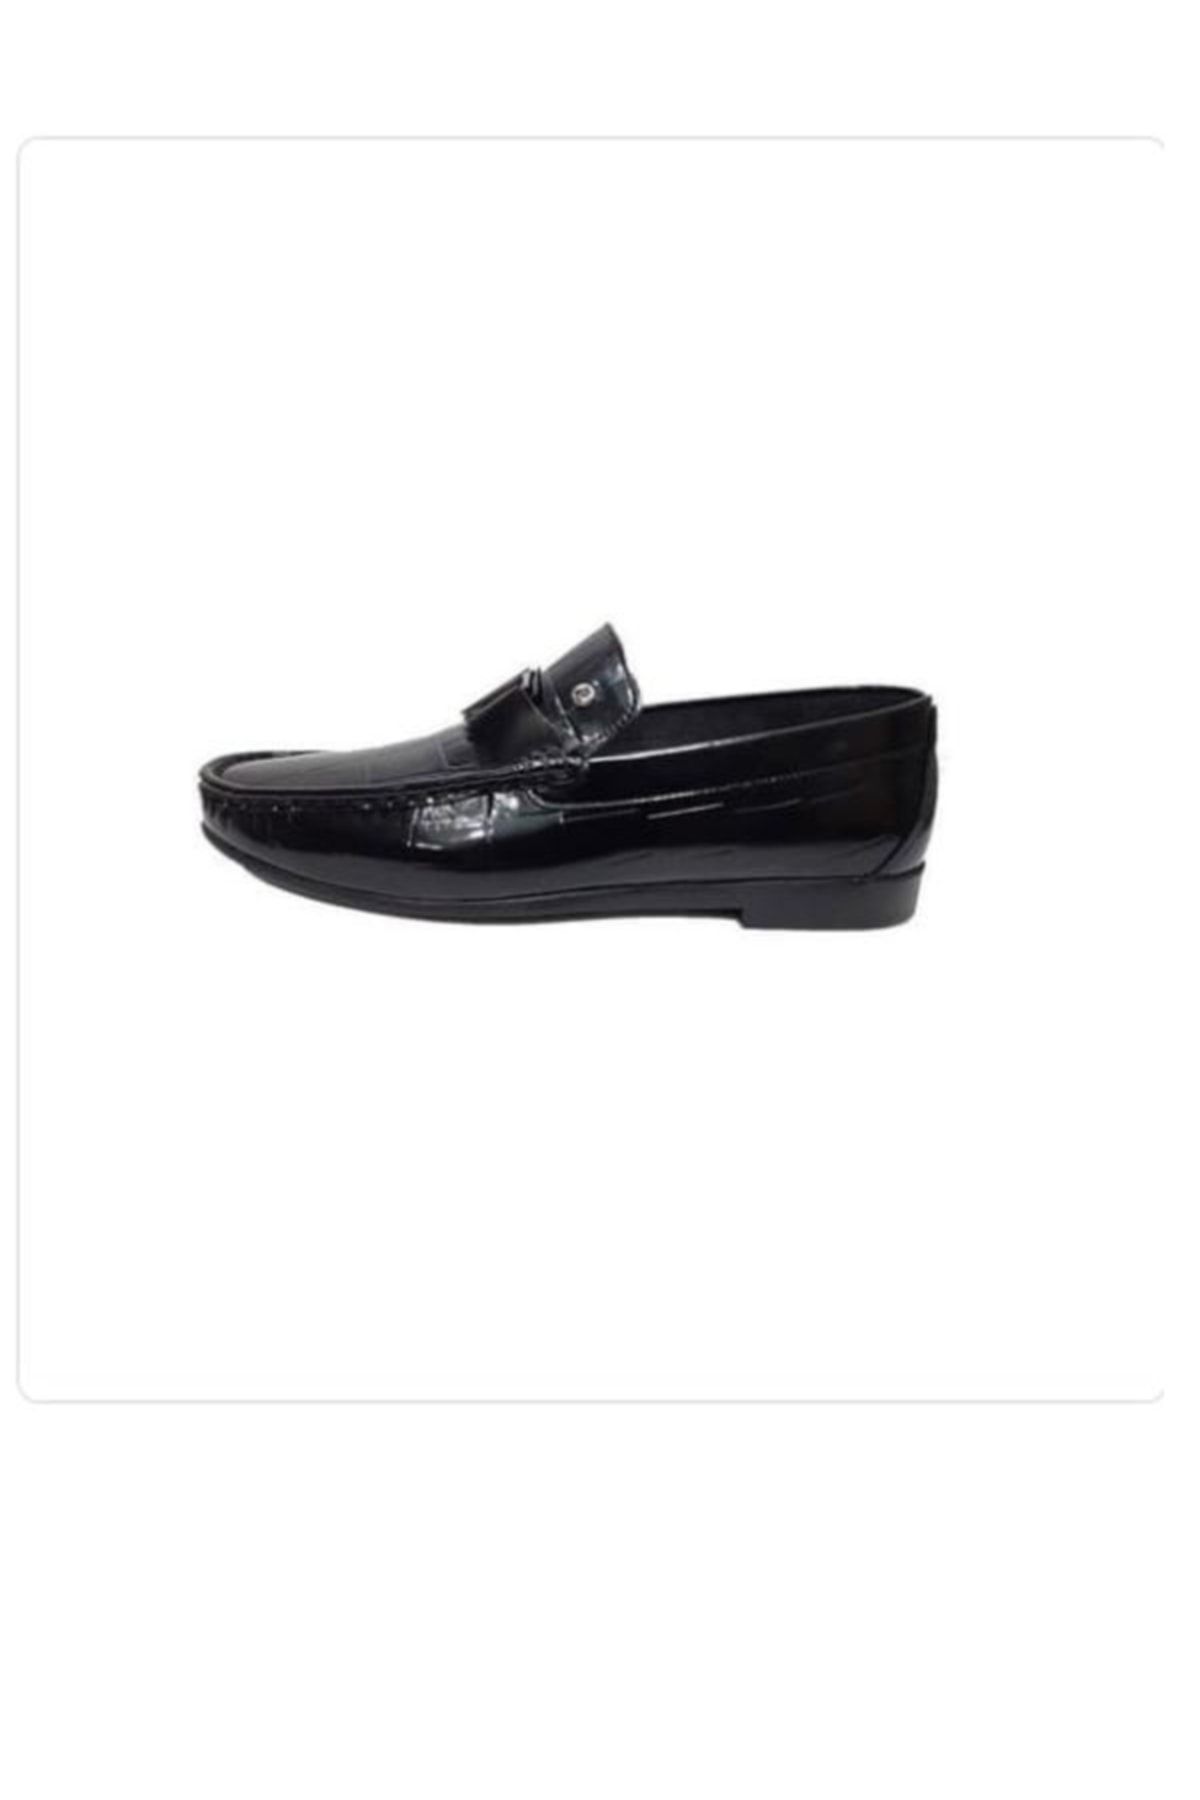 Pierre Cardin Erkek Ayakkabı